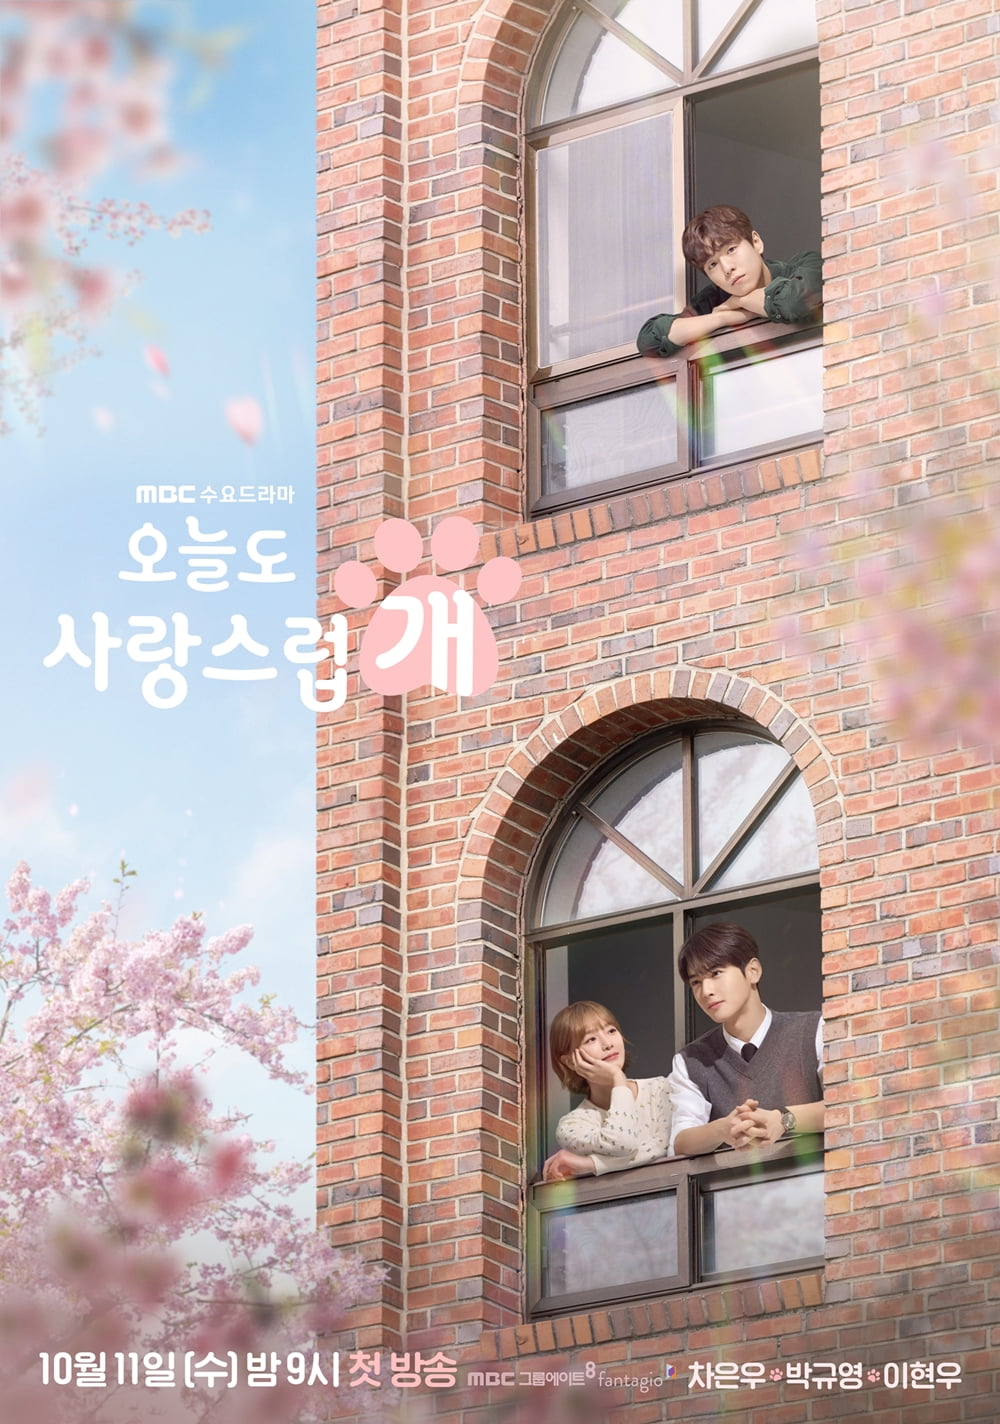 /사진=MBC 수목드라마 '오늘도 사랑스럽개' 포스터